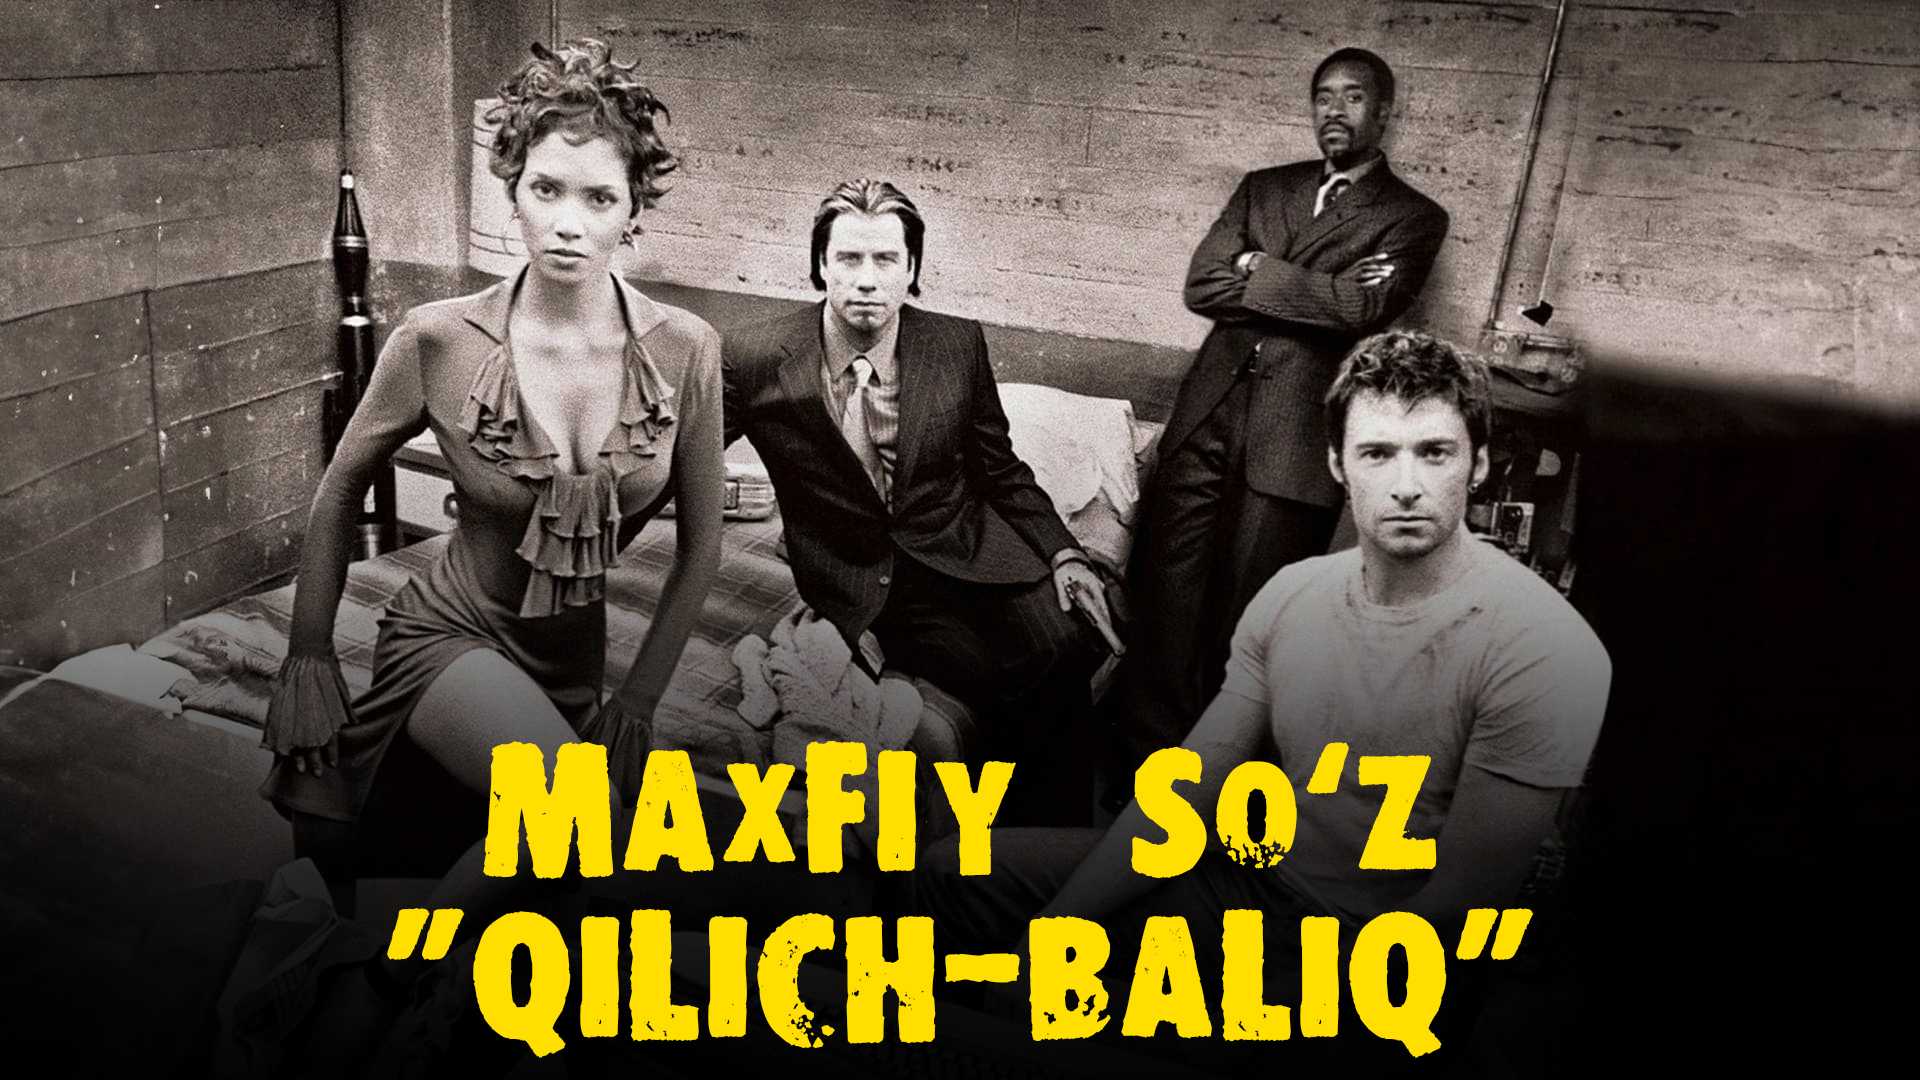 Maxfiy Soz "Qilich-Baliq"